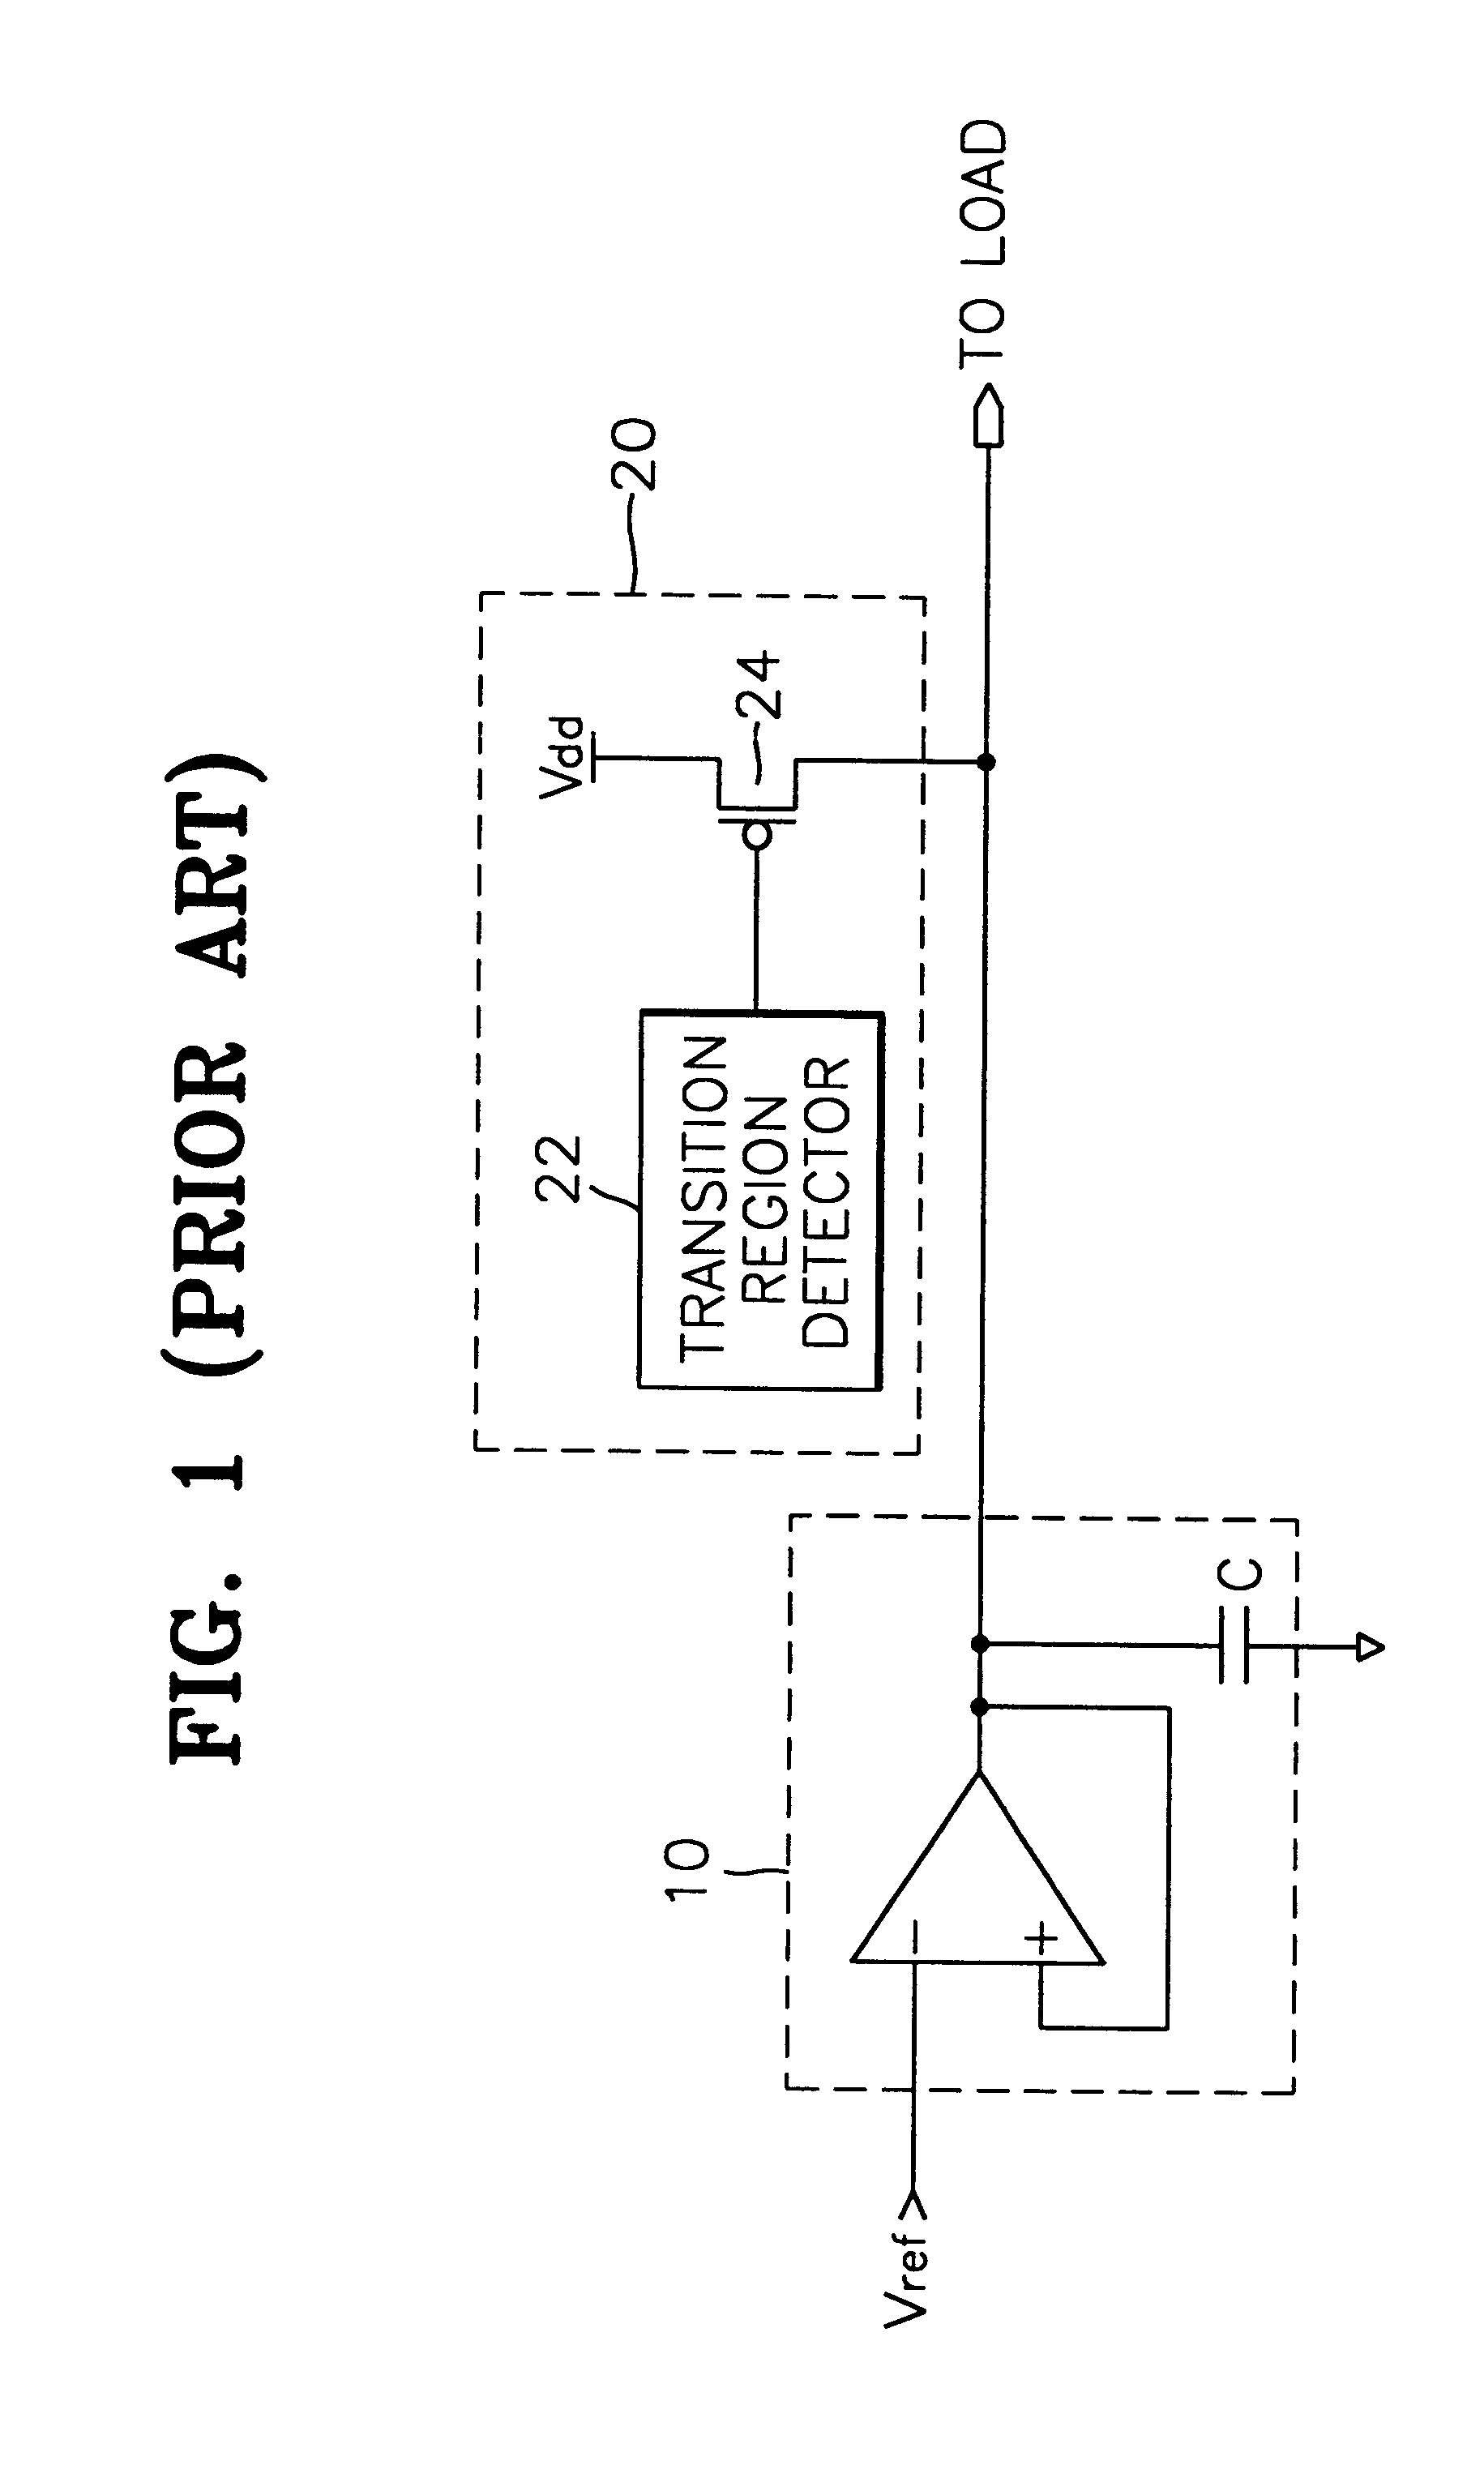 Charge compensator for voltage regulator